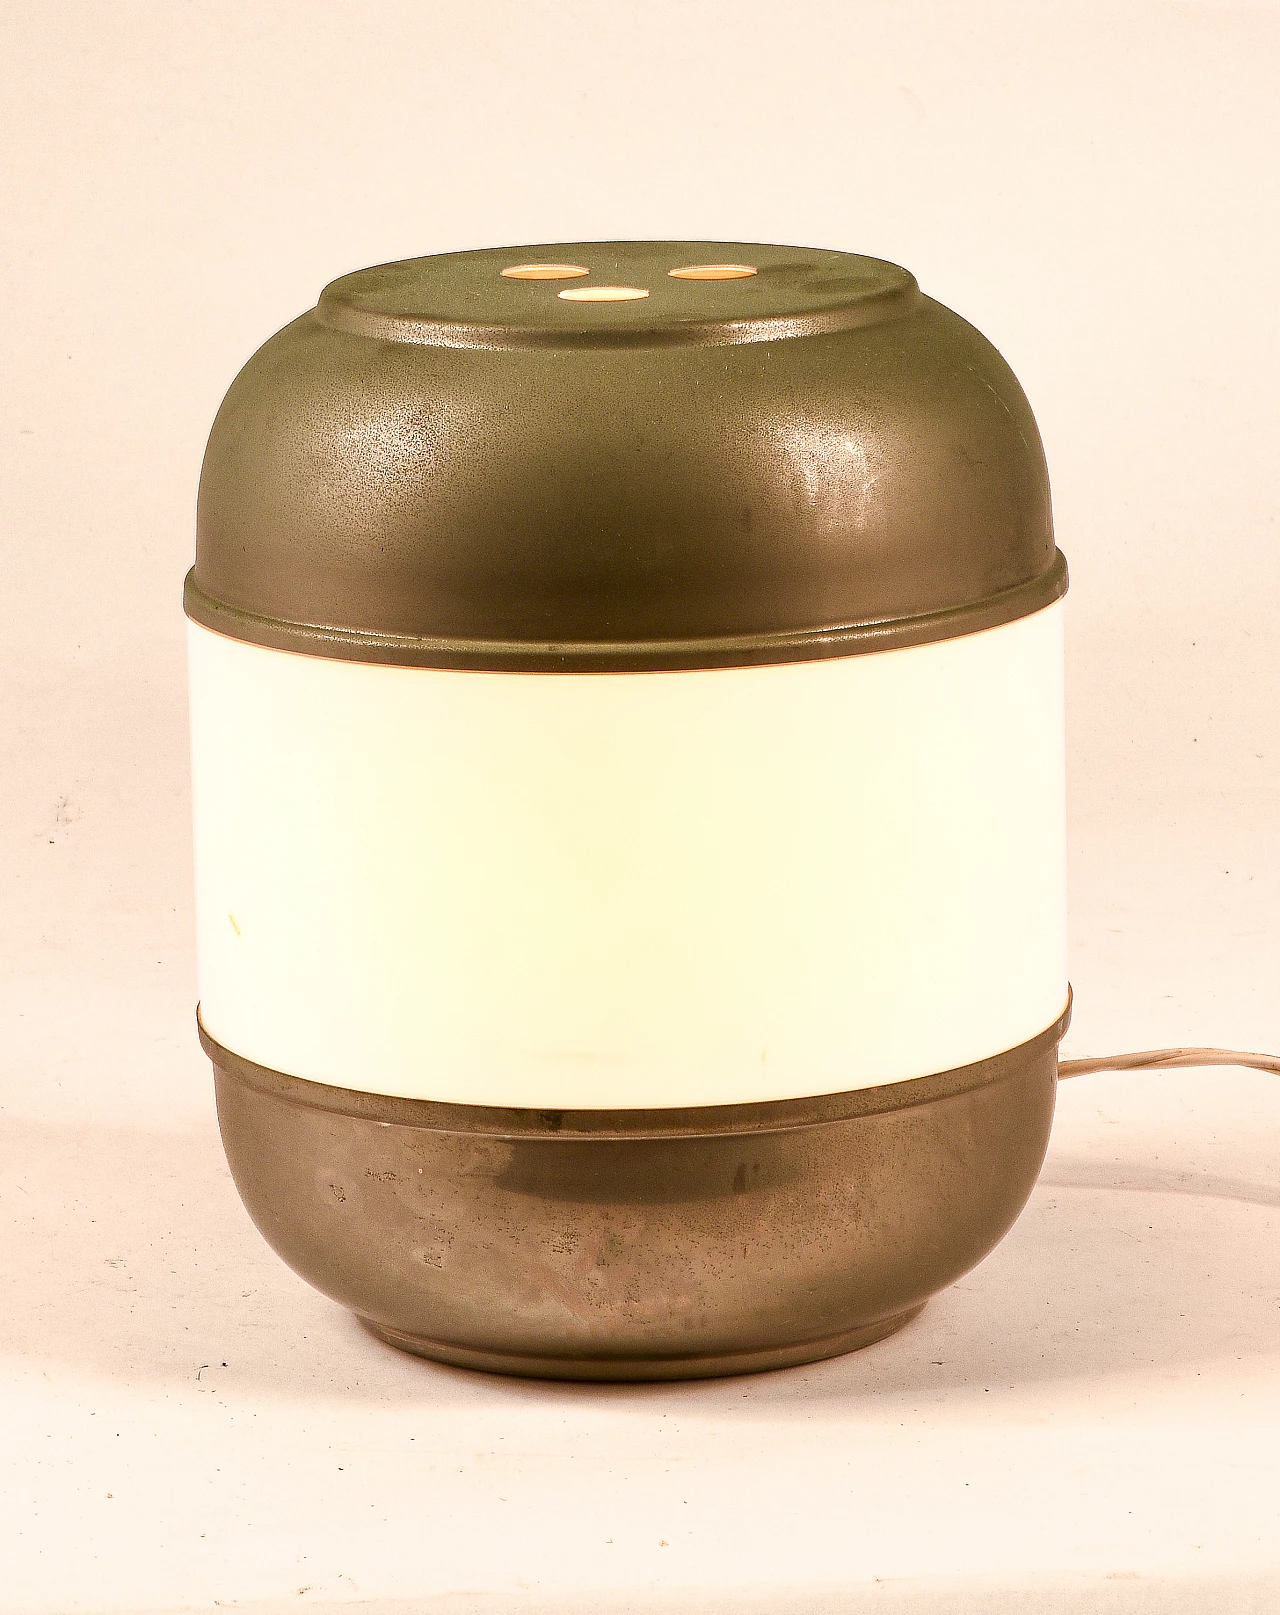 LA-11 table lamp by Vit Kelly for Silver Binox, 1970s 1